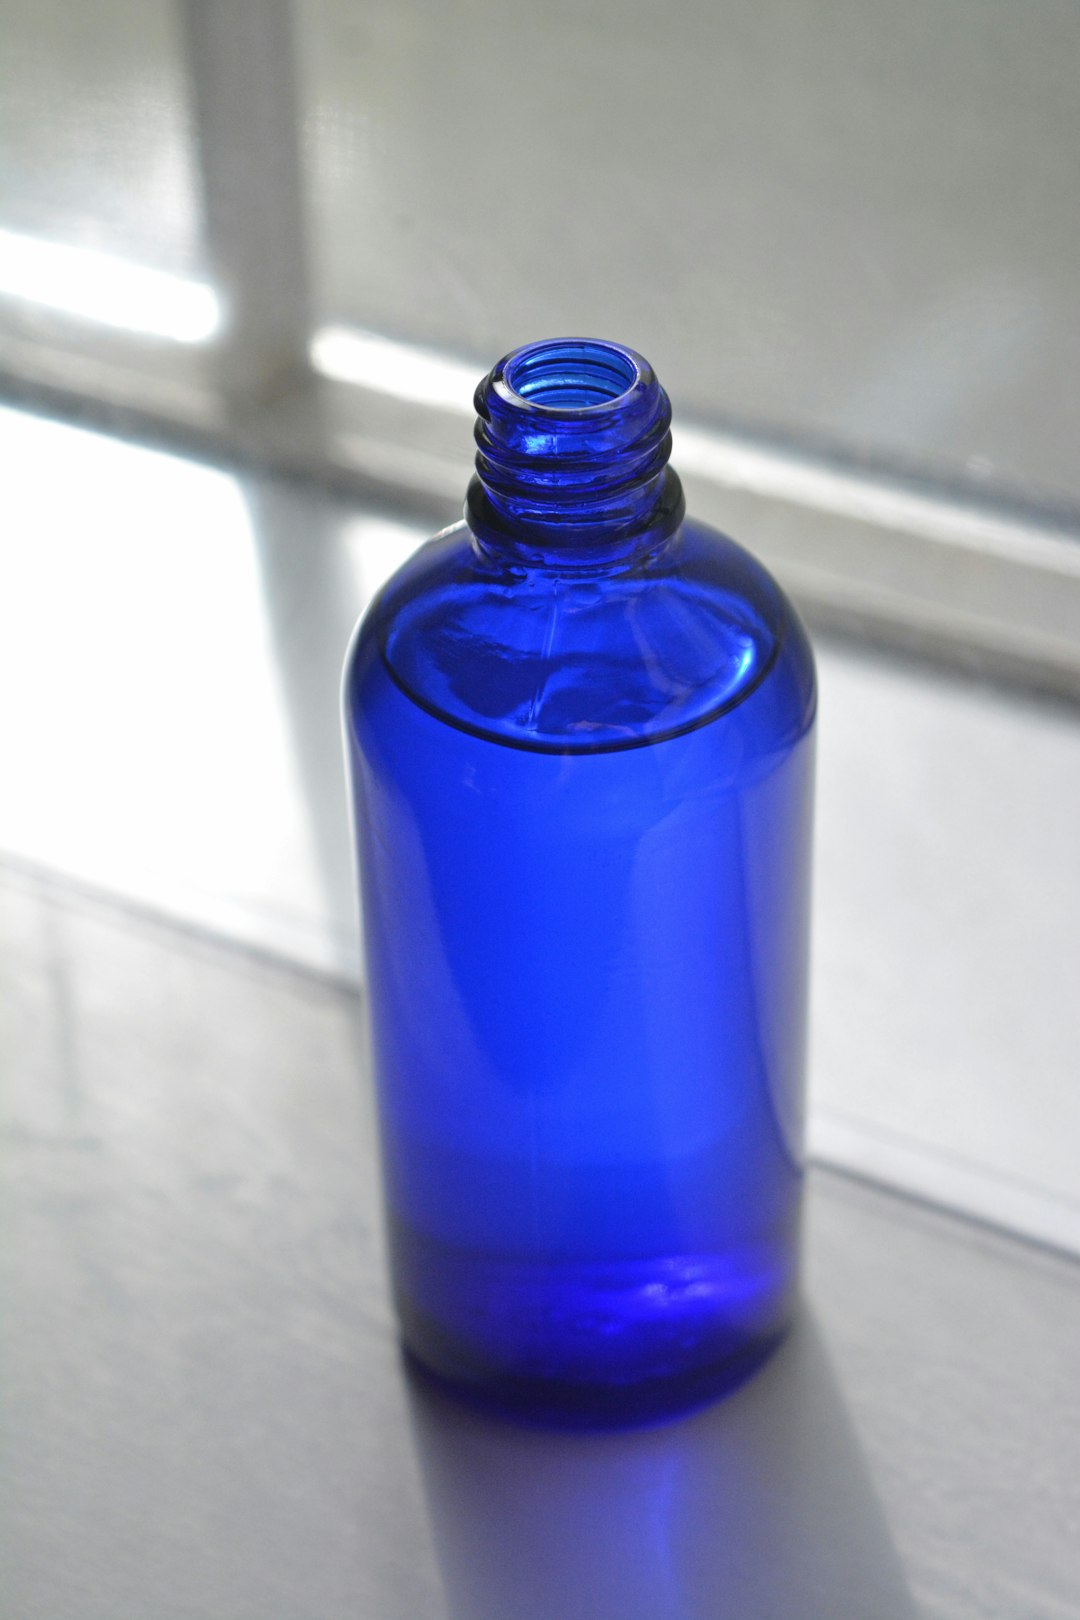 blue glass bottle on white table